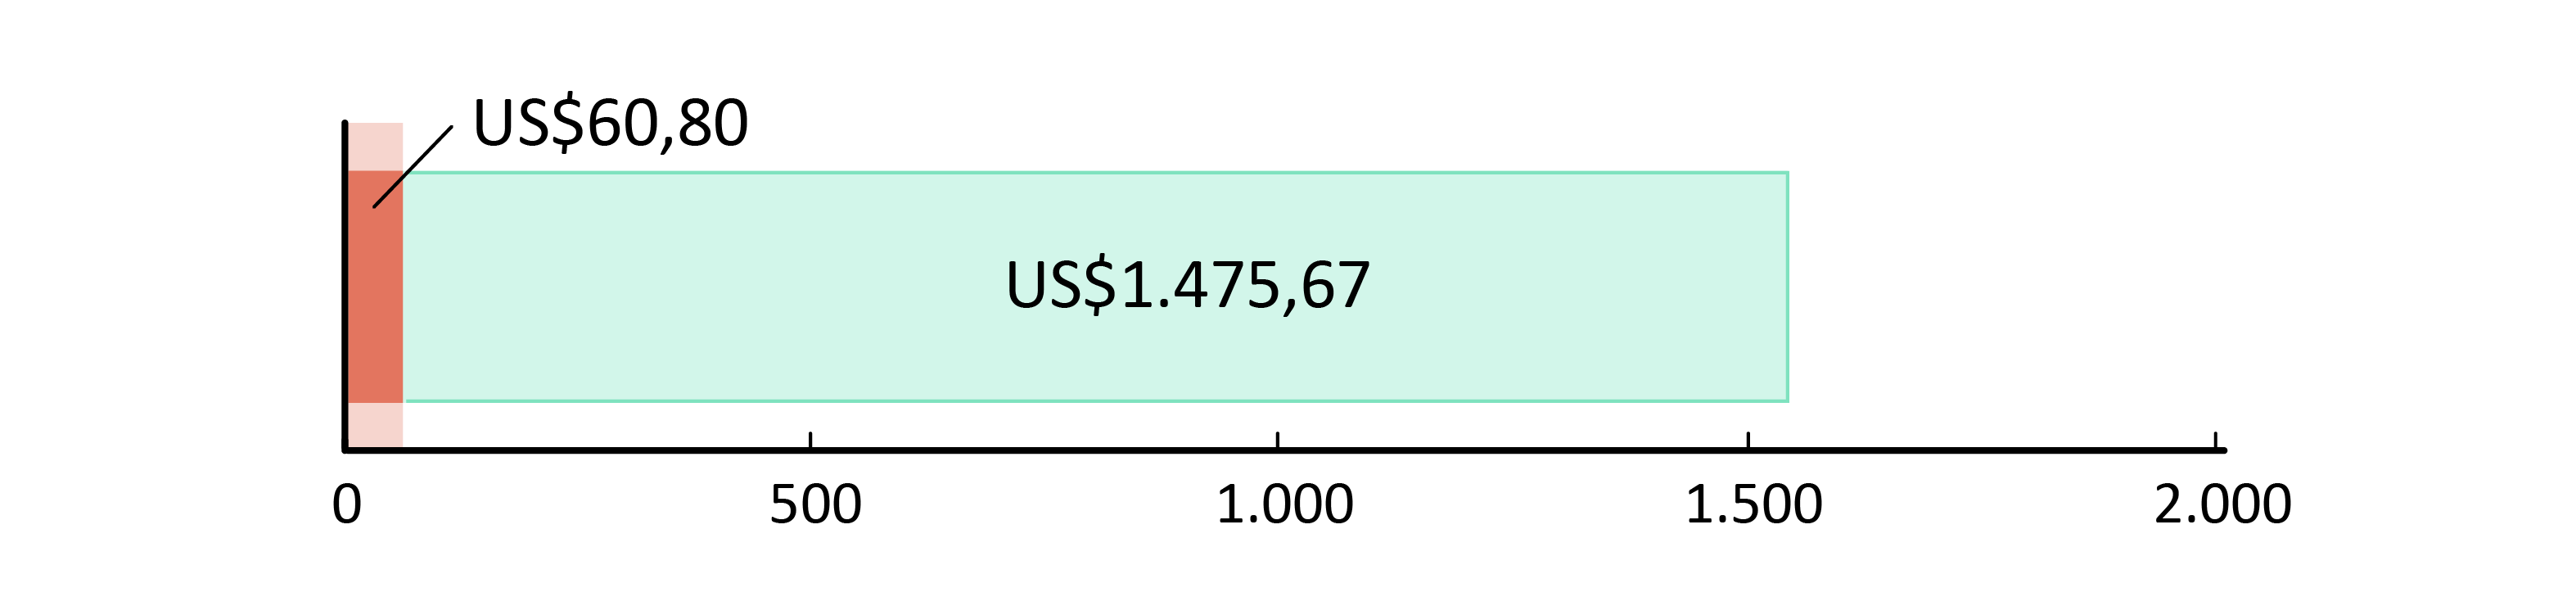 US$60,80 gastos; US$1.475,67 em caixa